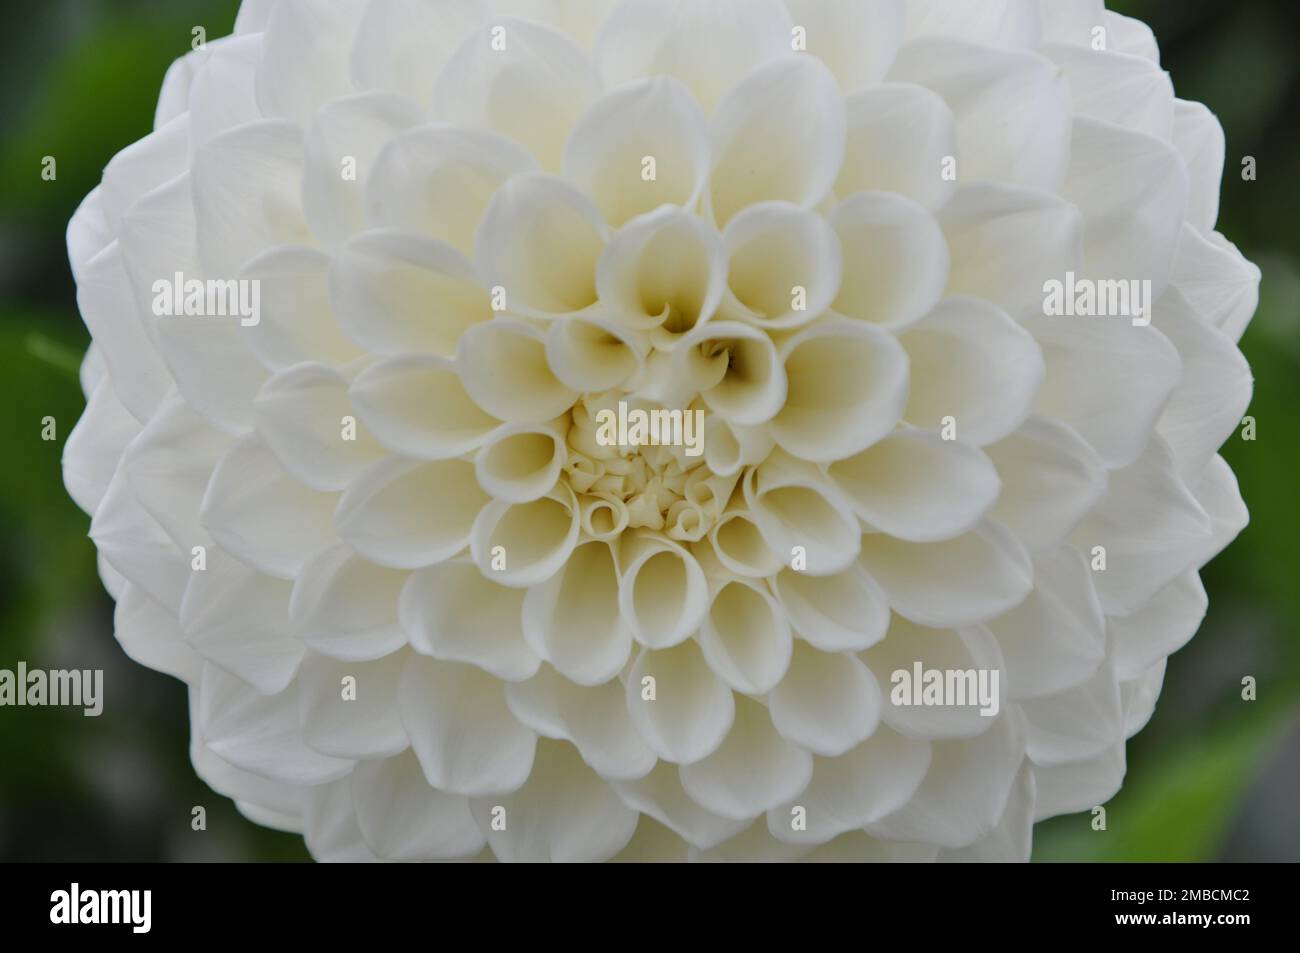 Détails de la photographie macro de fleur de balle de dahlia. Contraste élevé et motif floral complexe. Fond en fleur de dahlia blanc haut de gamme. Banque D'Images